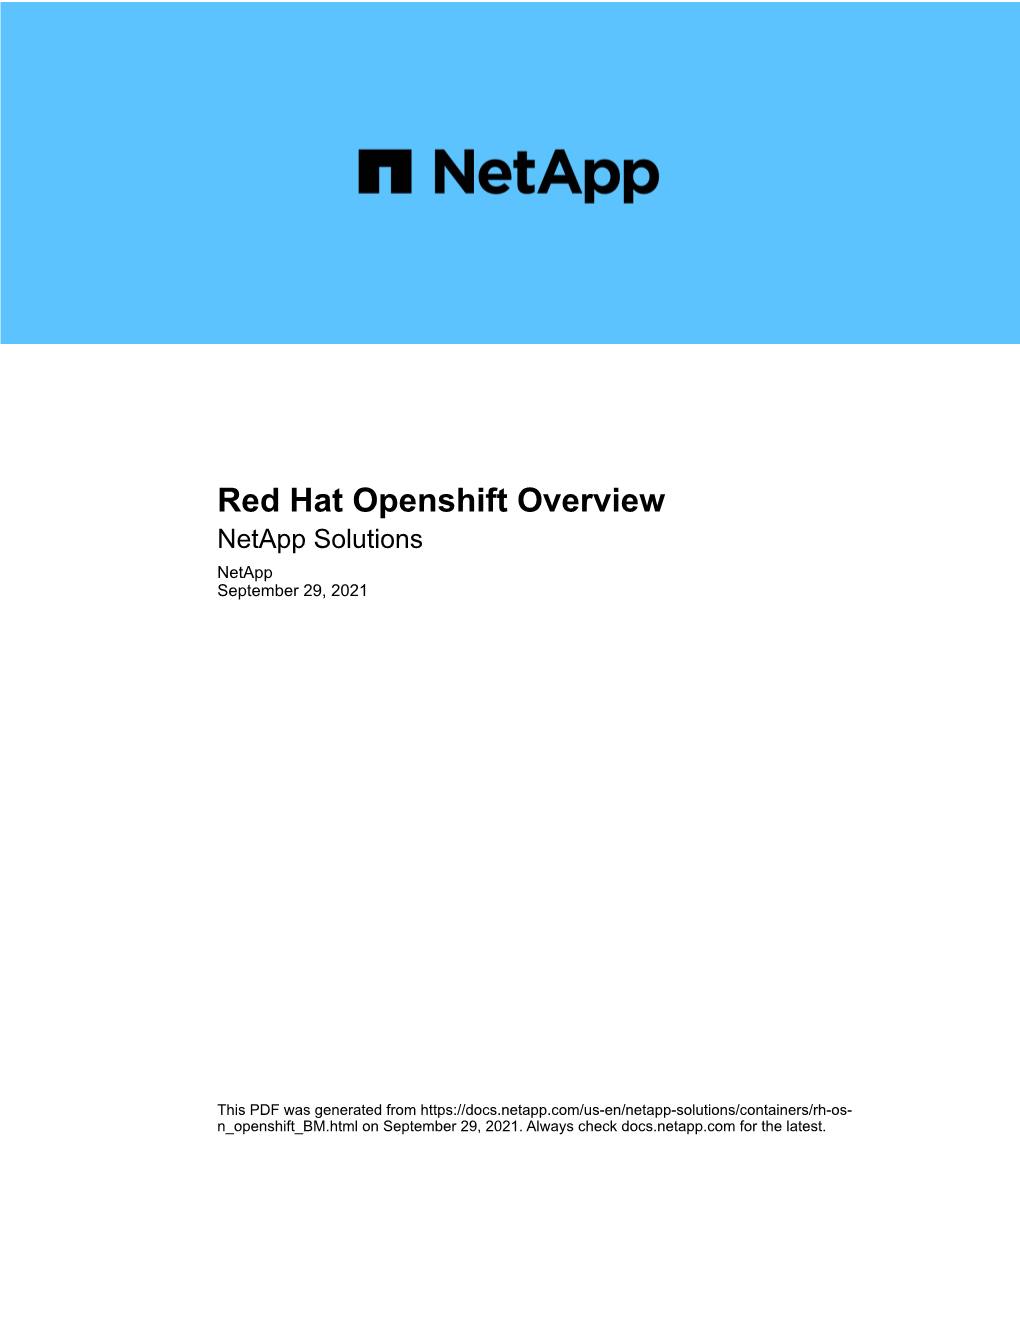 Red Hat Openshift Overview Netapp Solutions Netapp September 29, 2021